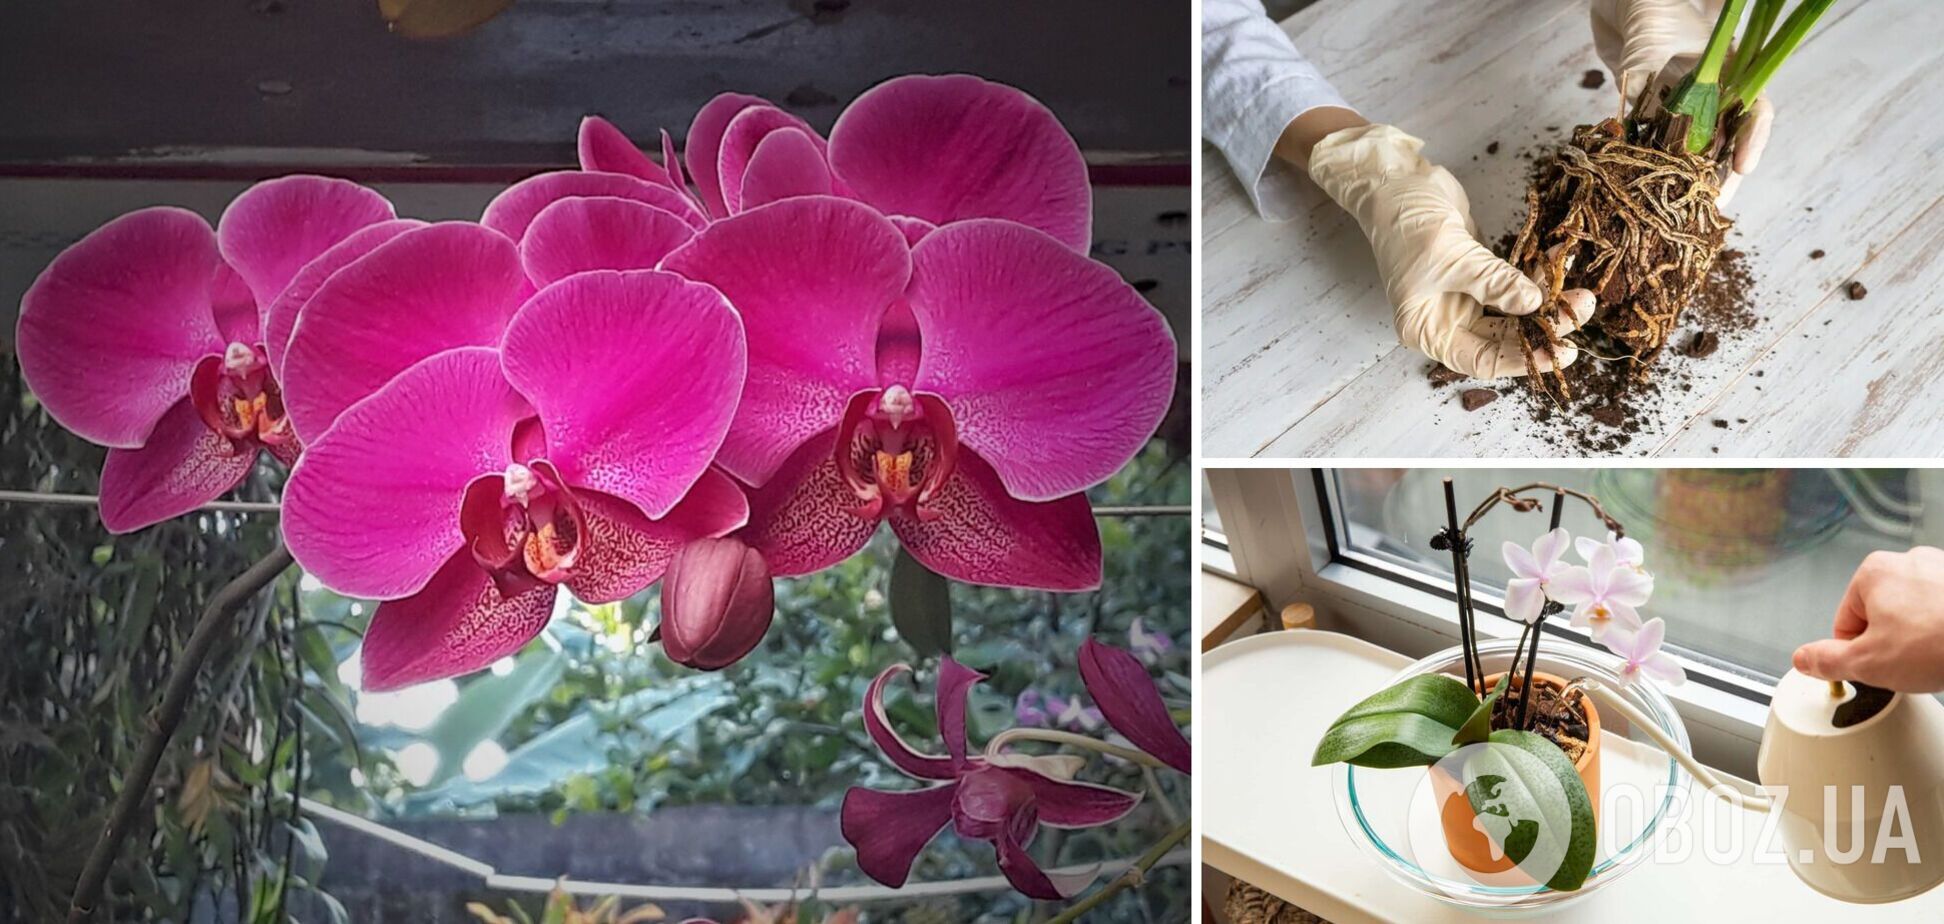 Нашумевшее средство может убить орхидею: чем категорически нельзя 'спасать' цветок